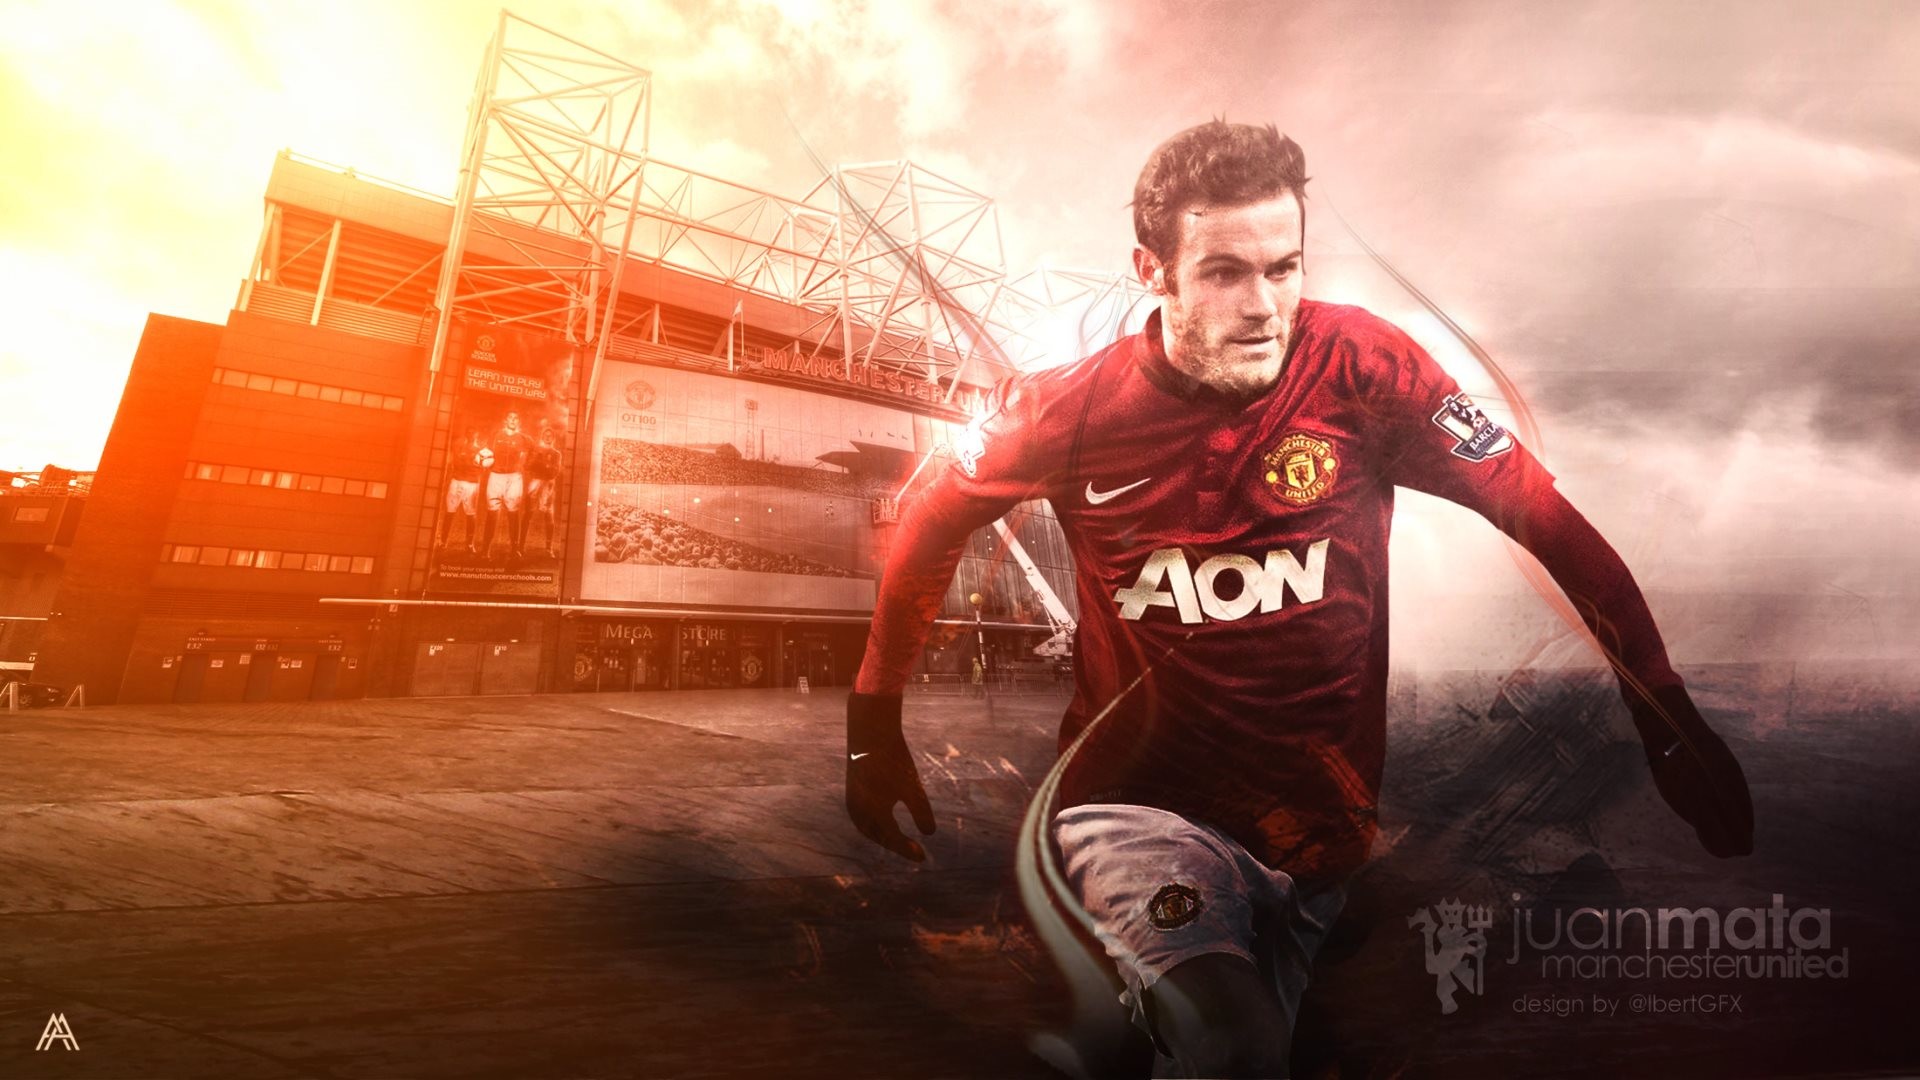 1920x1080 Wallpaper: Juan Mata - Manchester United. High Definition HD 